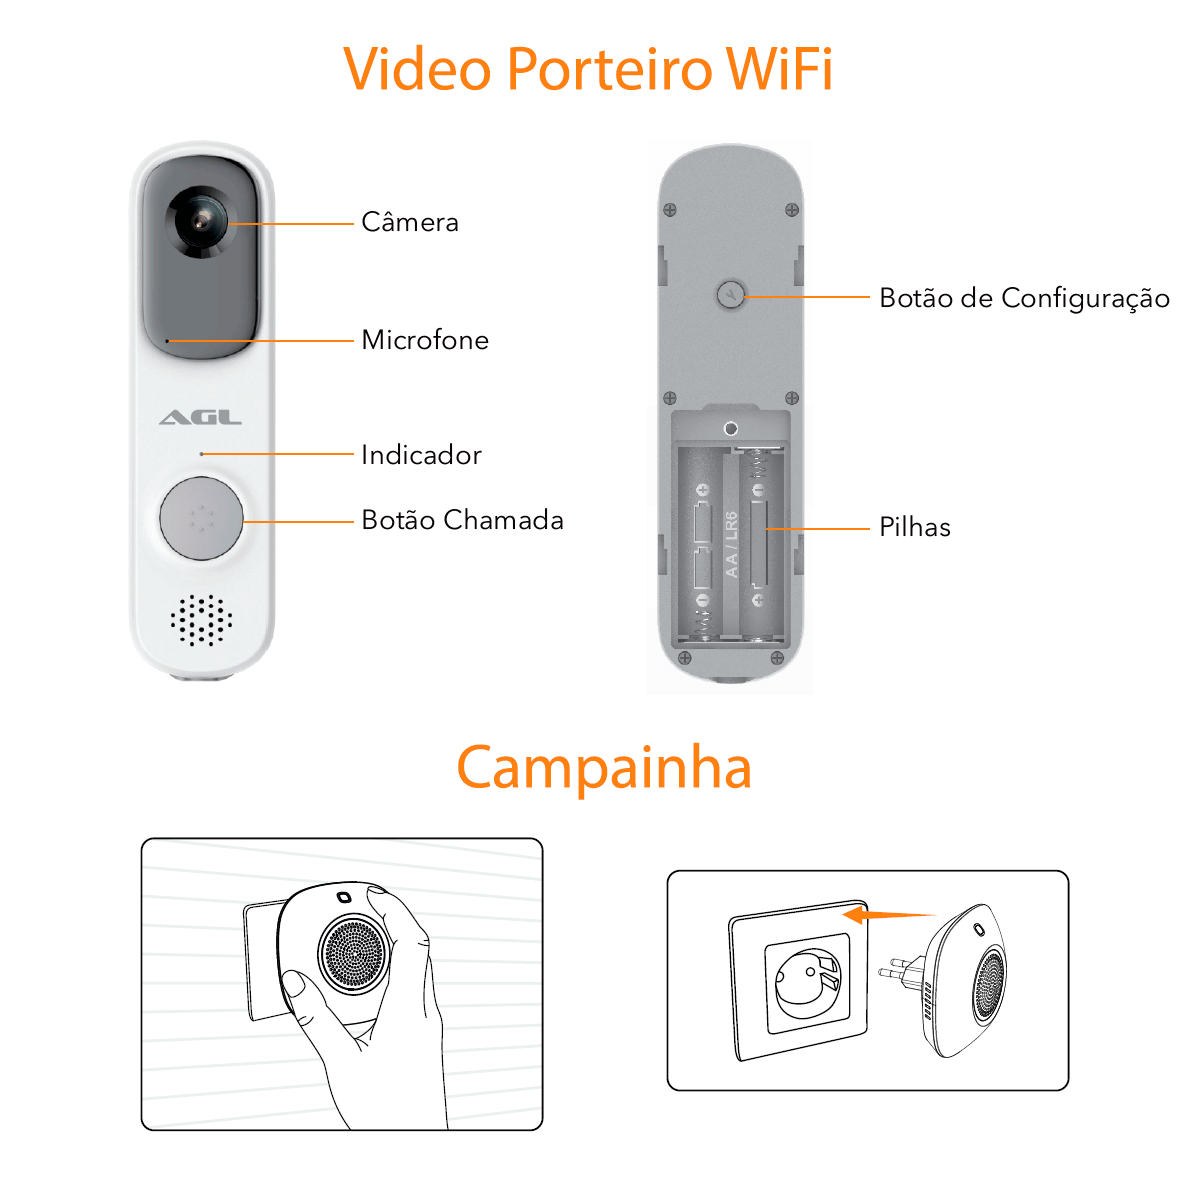 Video-Porteiro-Campainha-Wifi-Sem-Fio-AGL-02